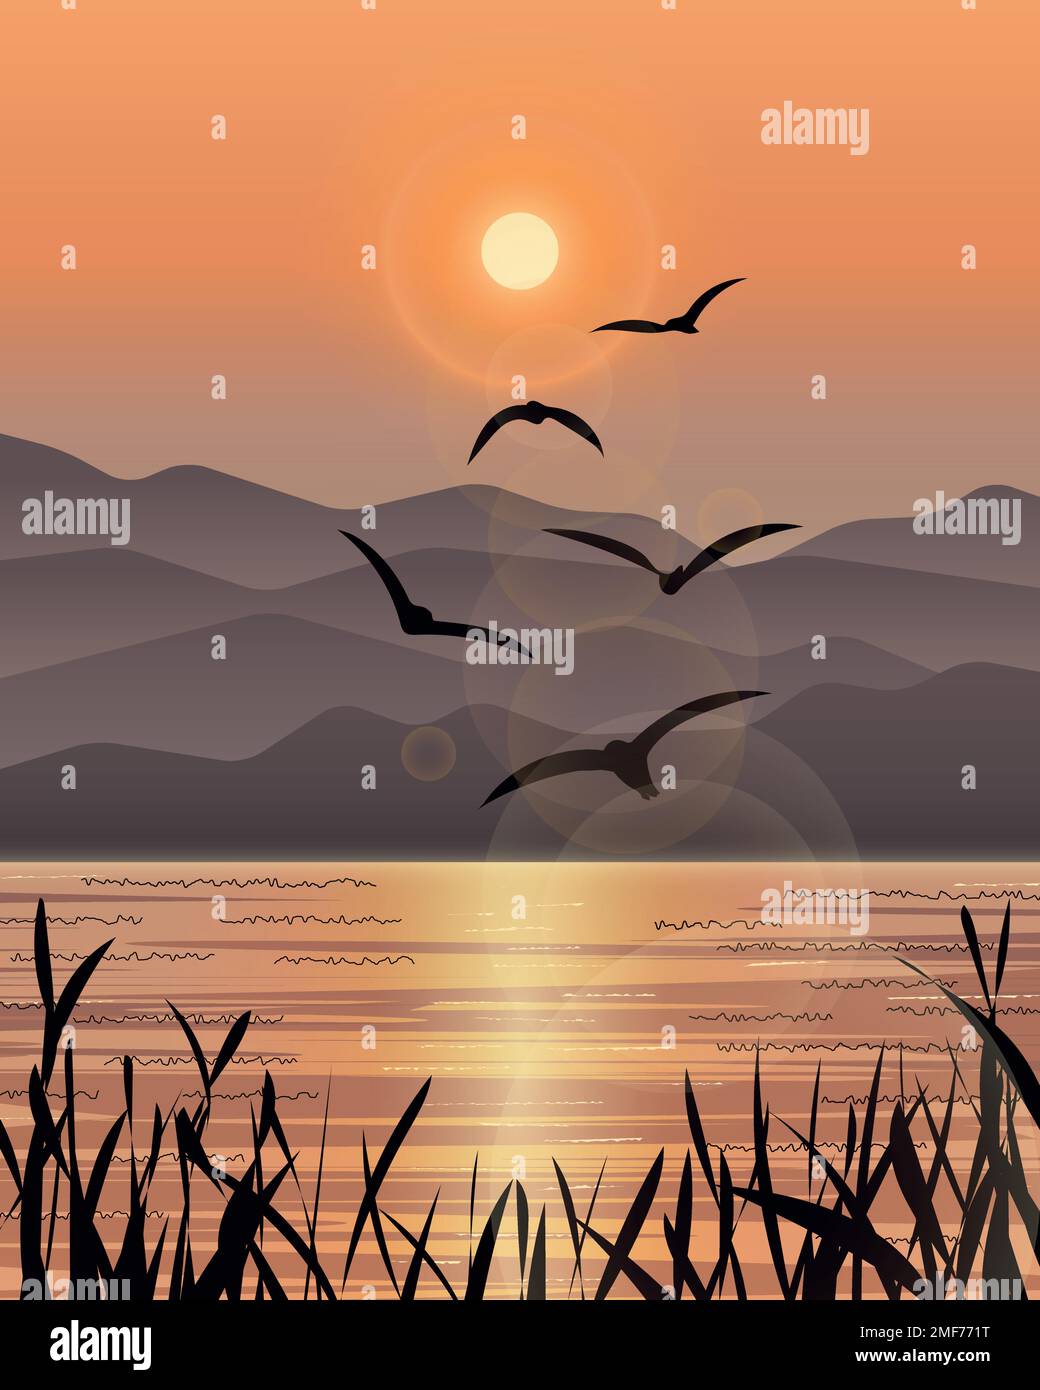 Illustrazione del mare con il gregge di gabbiani che volano sullo sfondo del tramonto e la silhouette di canna in primo piano. Illustrazione Vettoriale